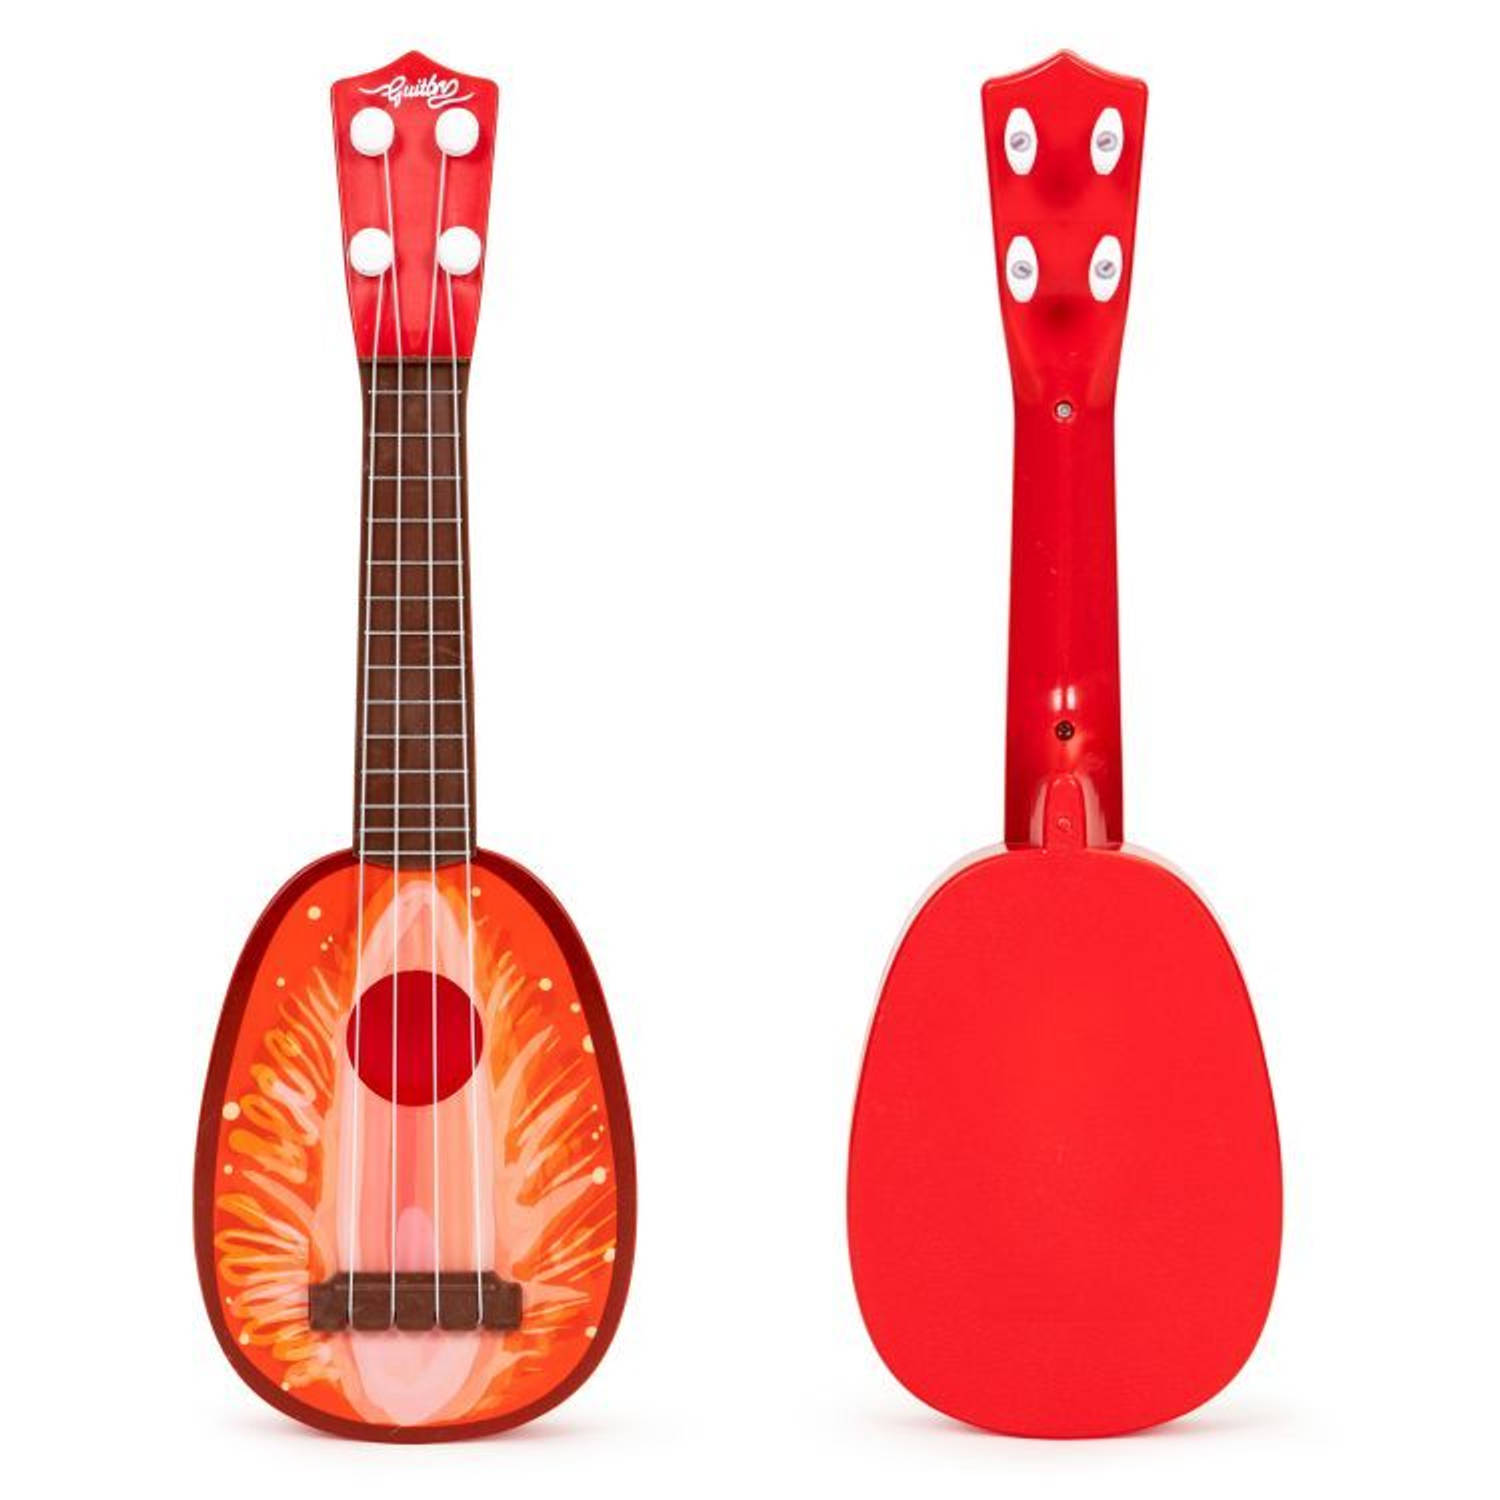 Ecotoys mini kunststof kinder ukelele-gitaar aardbei met 4 snaren 36 x 11.5 x 3.5 cm rood